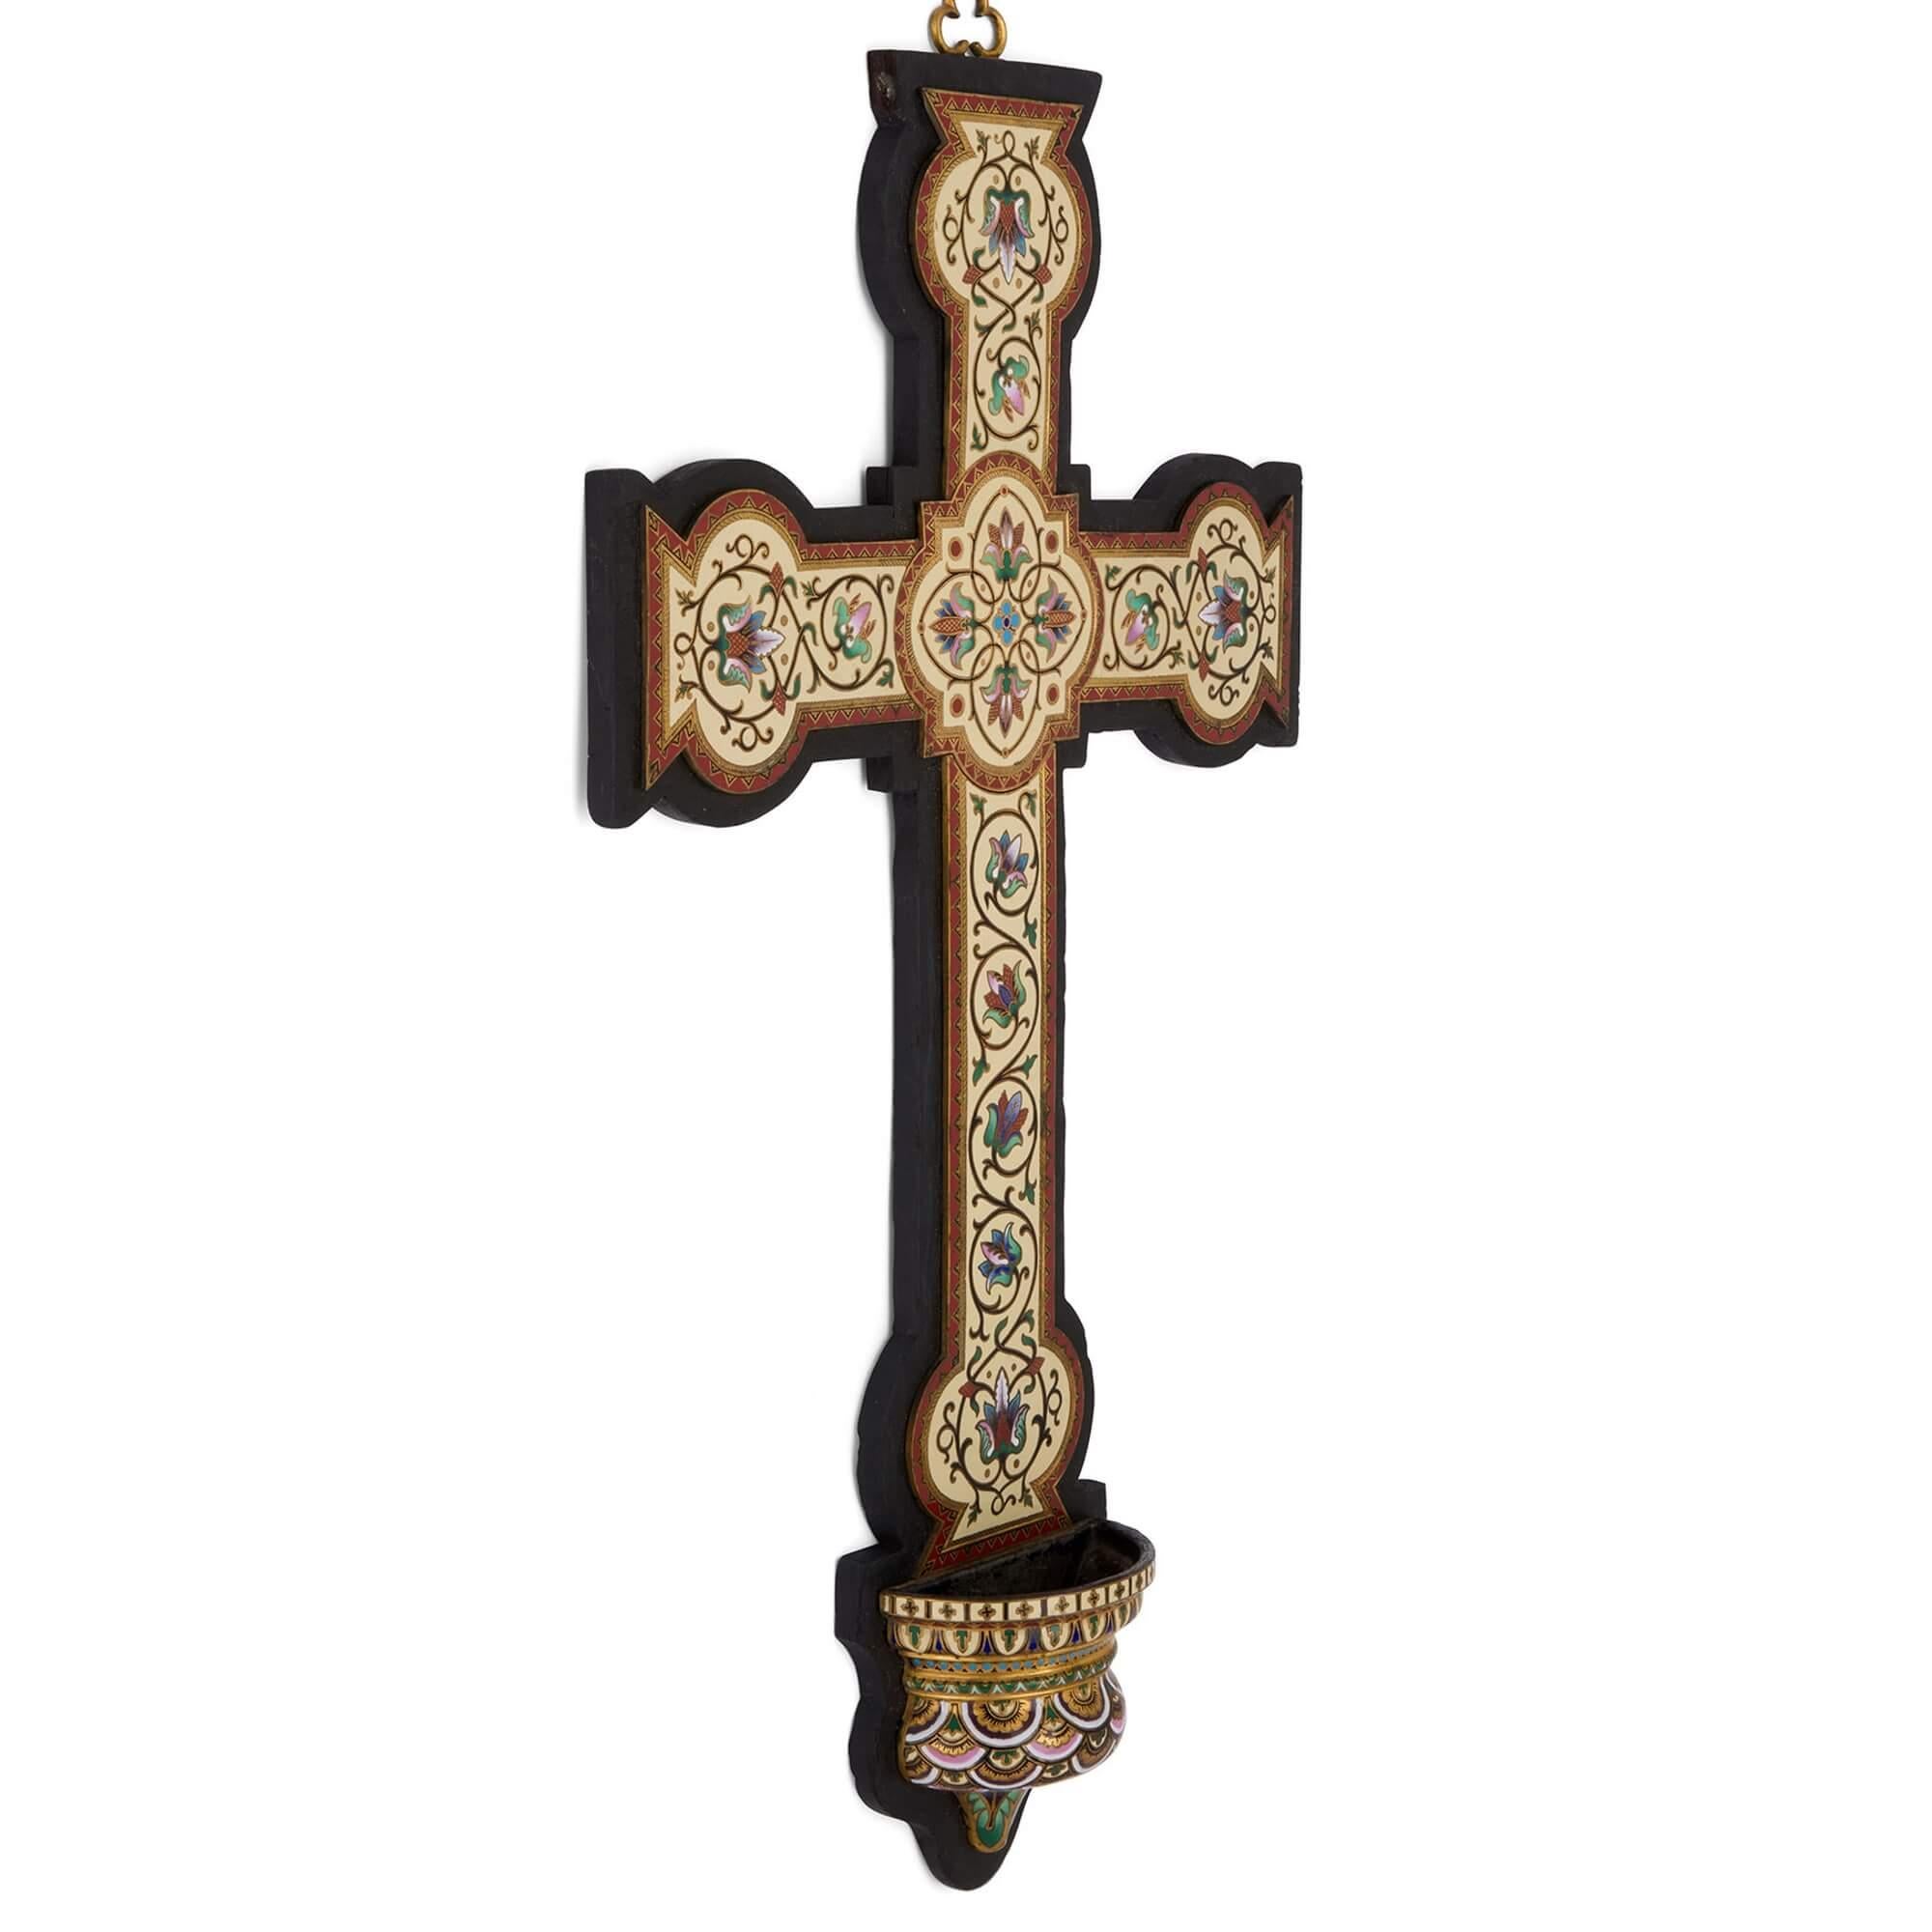 Antikes großes Cloisonné-Email-Wandkruzifix mit Taufbecken 
Französisch, Ende 19. Jahrhundert 
Höhe 57cm, Breite 33cm, Tiefe 7cm

Dieses prächtige dekorative Kreuz ist so konzipiert, dass es an der Wand aufgehängt werden kann, was durch den kleinen,